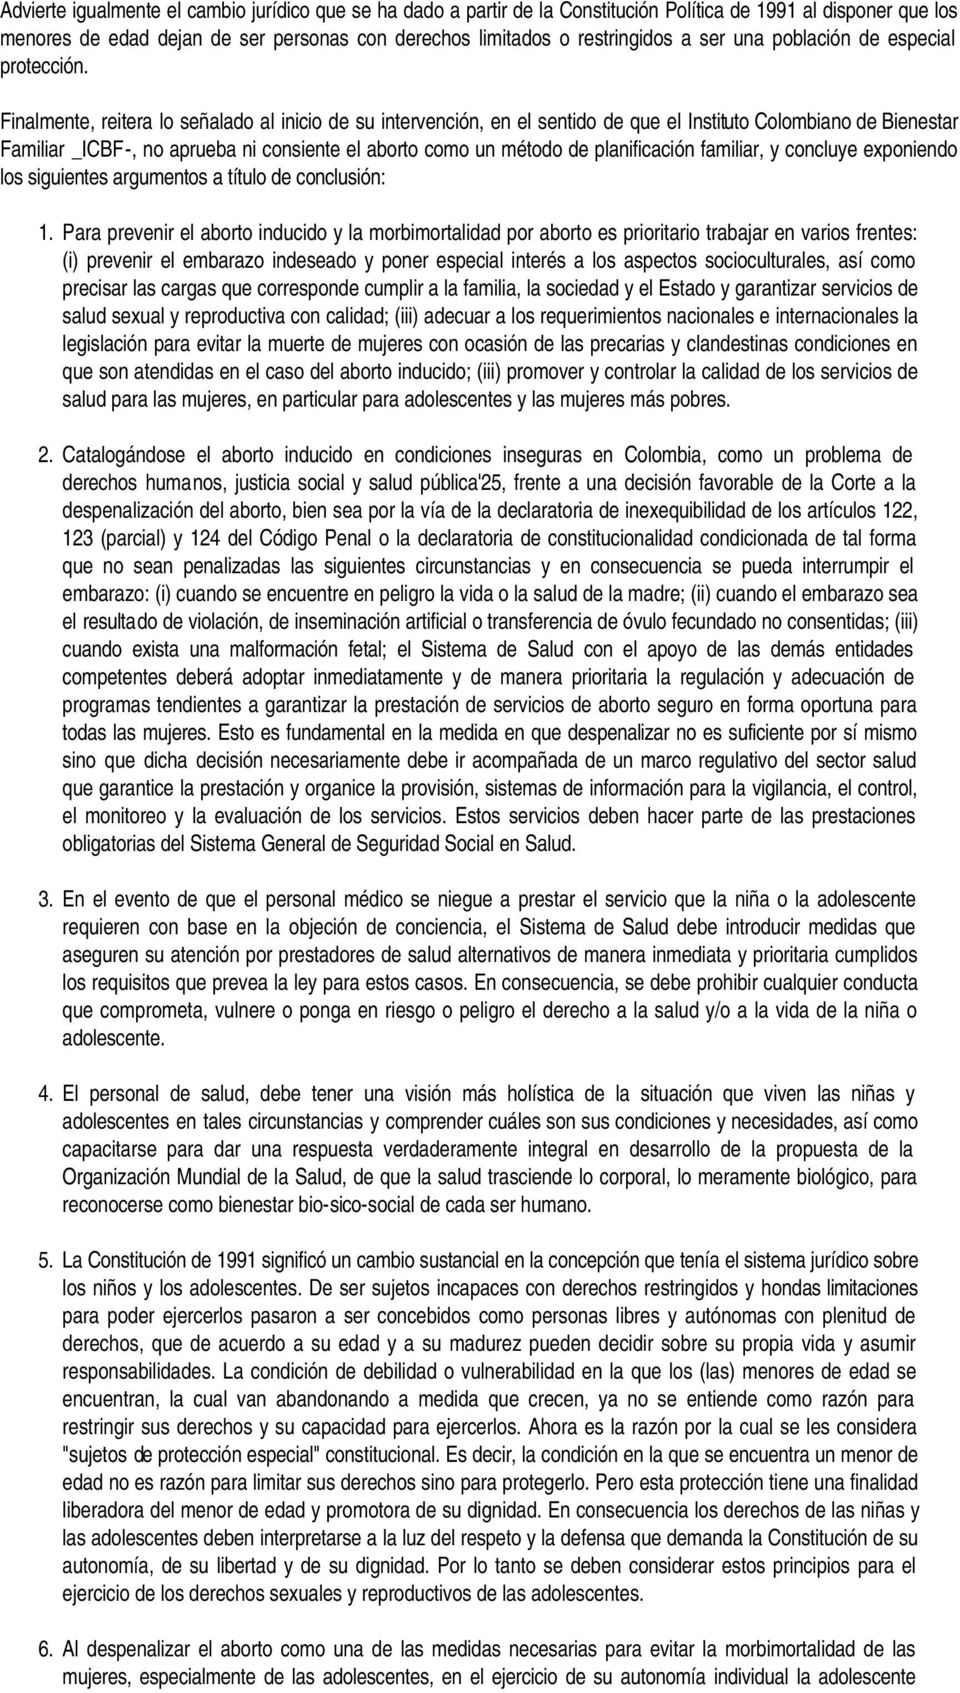 Finalmente, reitera lo señalado al inicio de su intervención, en el sentido de que el Instituto Colombiano de Bienestar Familiar _ICBF-, no aprueba ni consiente el aborto como un método de